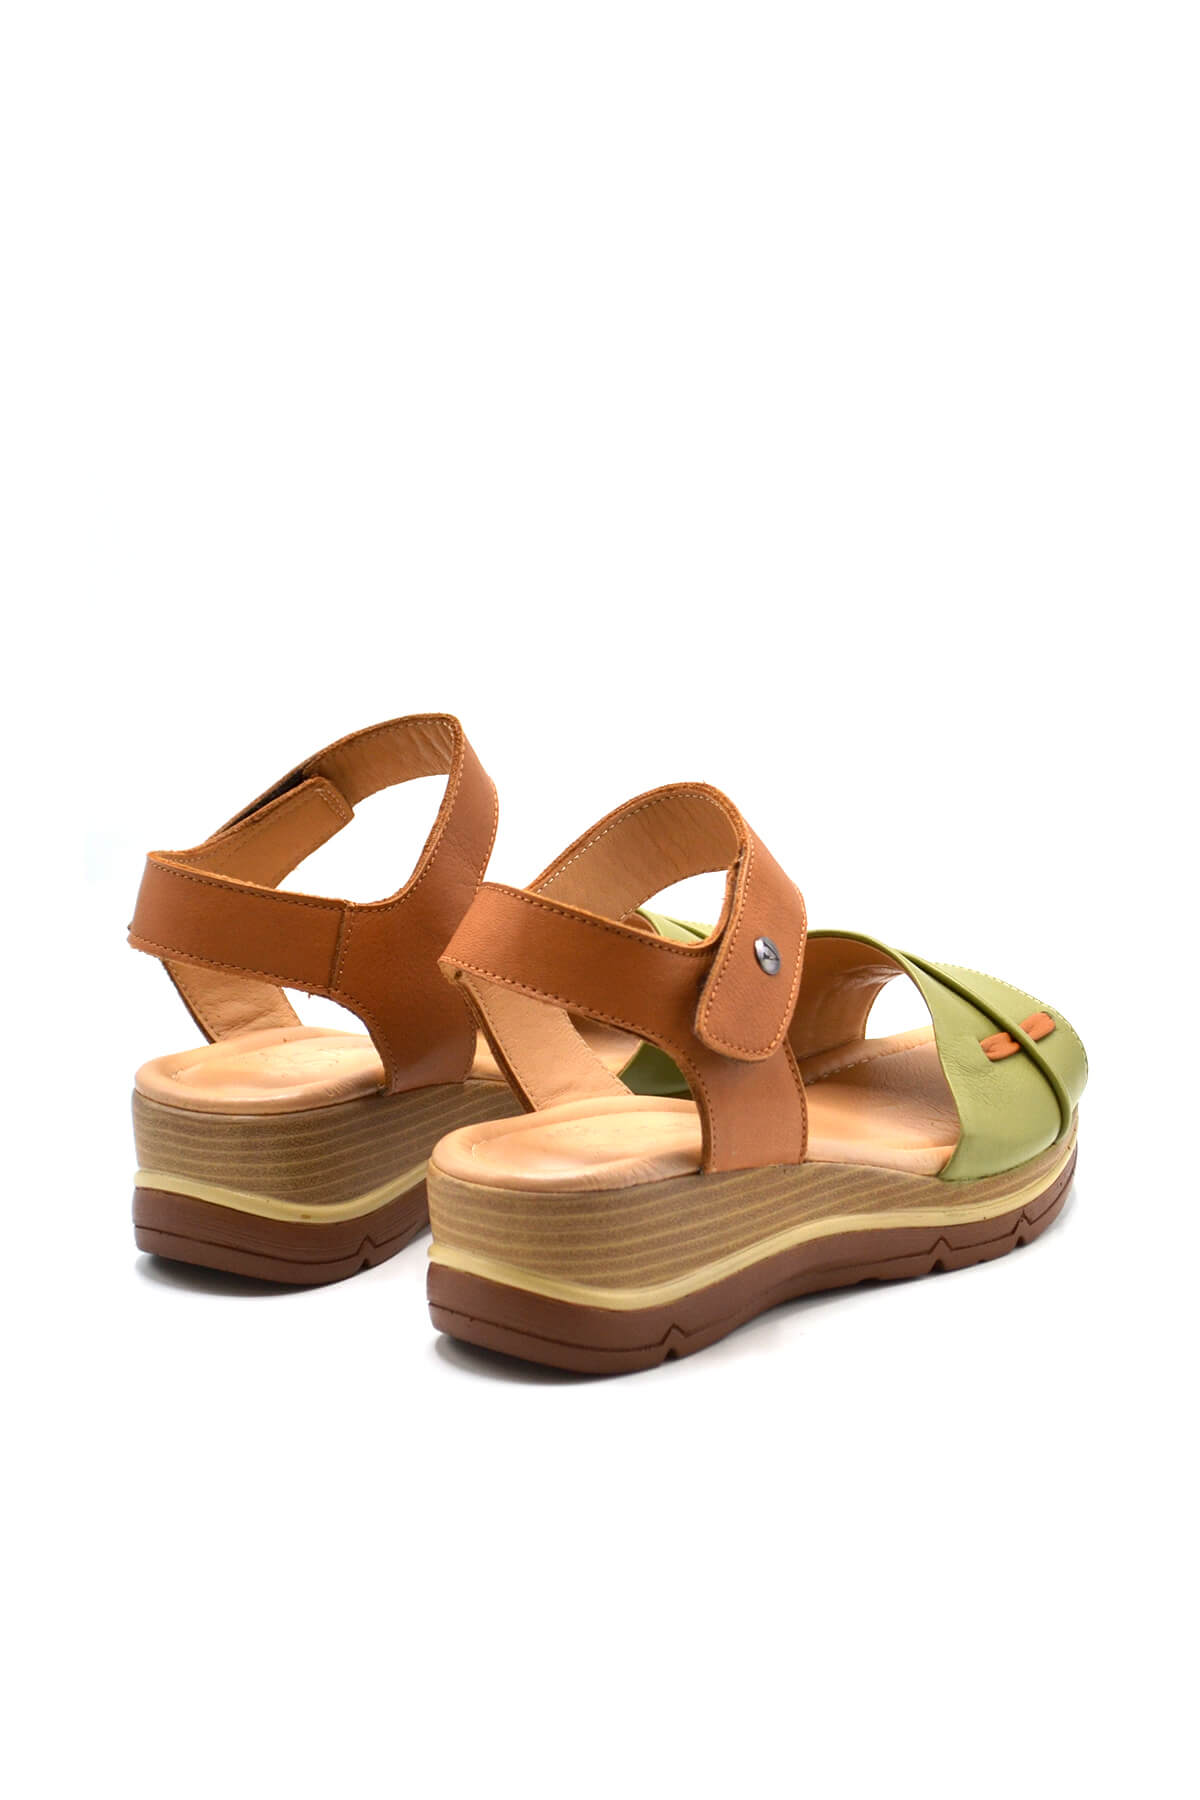 Kadın Comfort Deri Sandalet Fıstık Yeşili 2313402Y